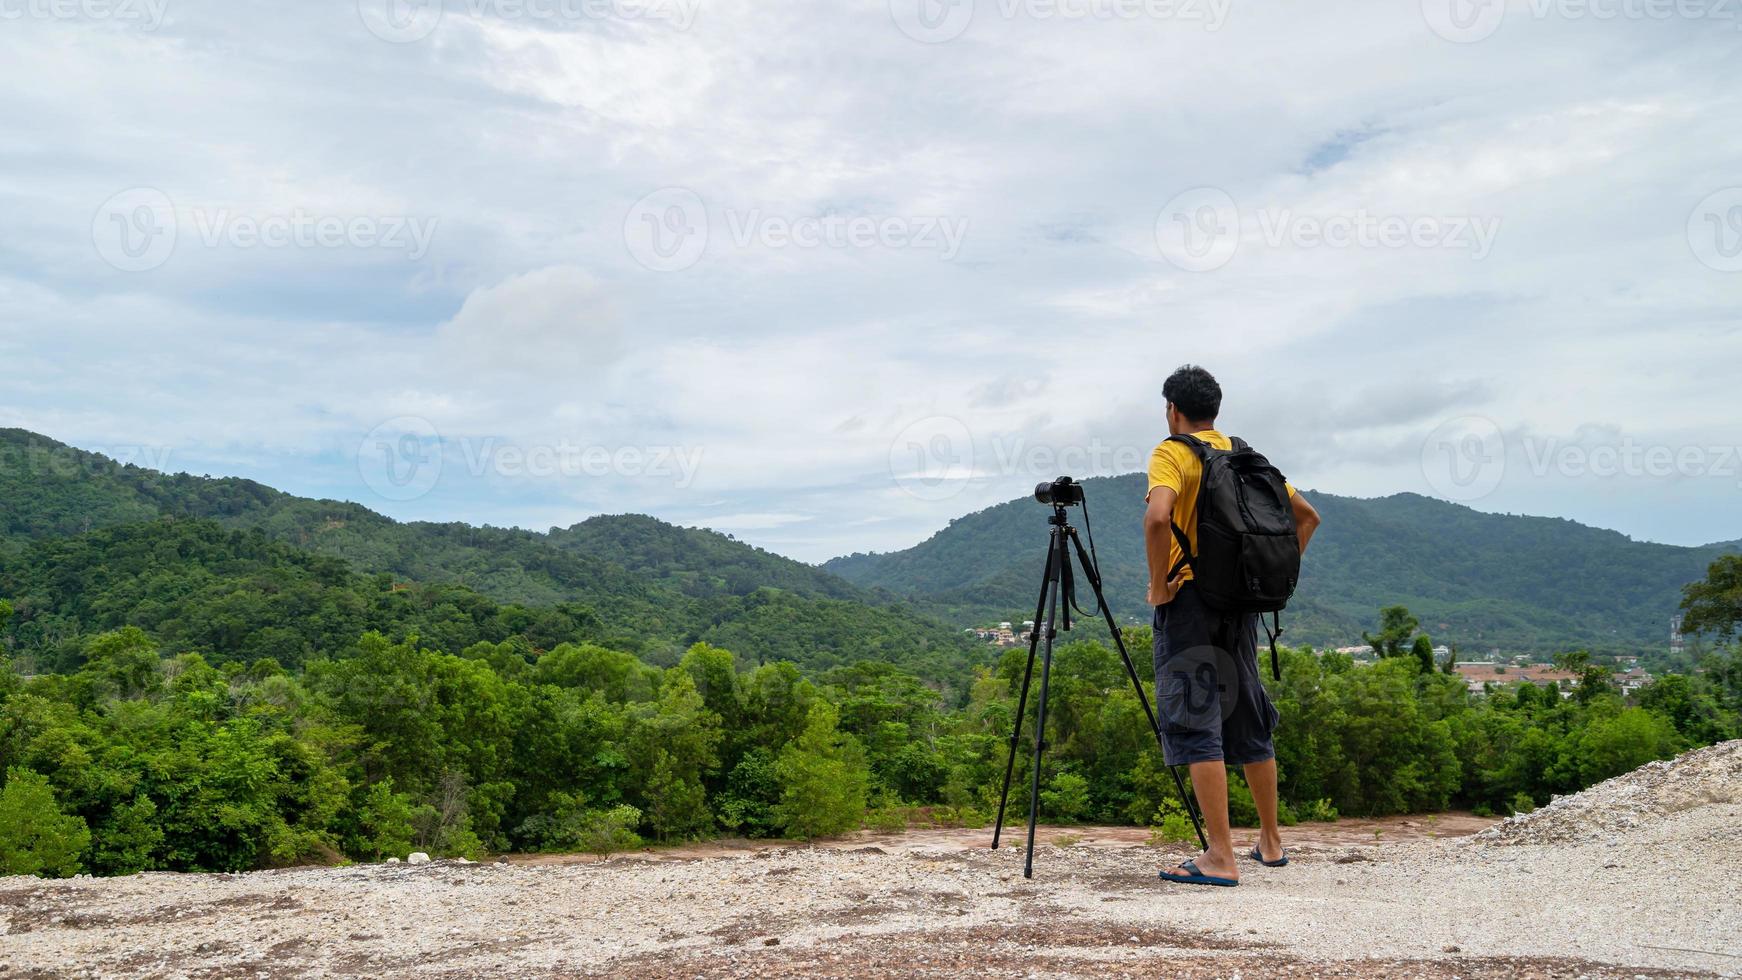 photographe masculin professionnel en haute montagne prend une photo